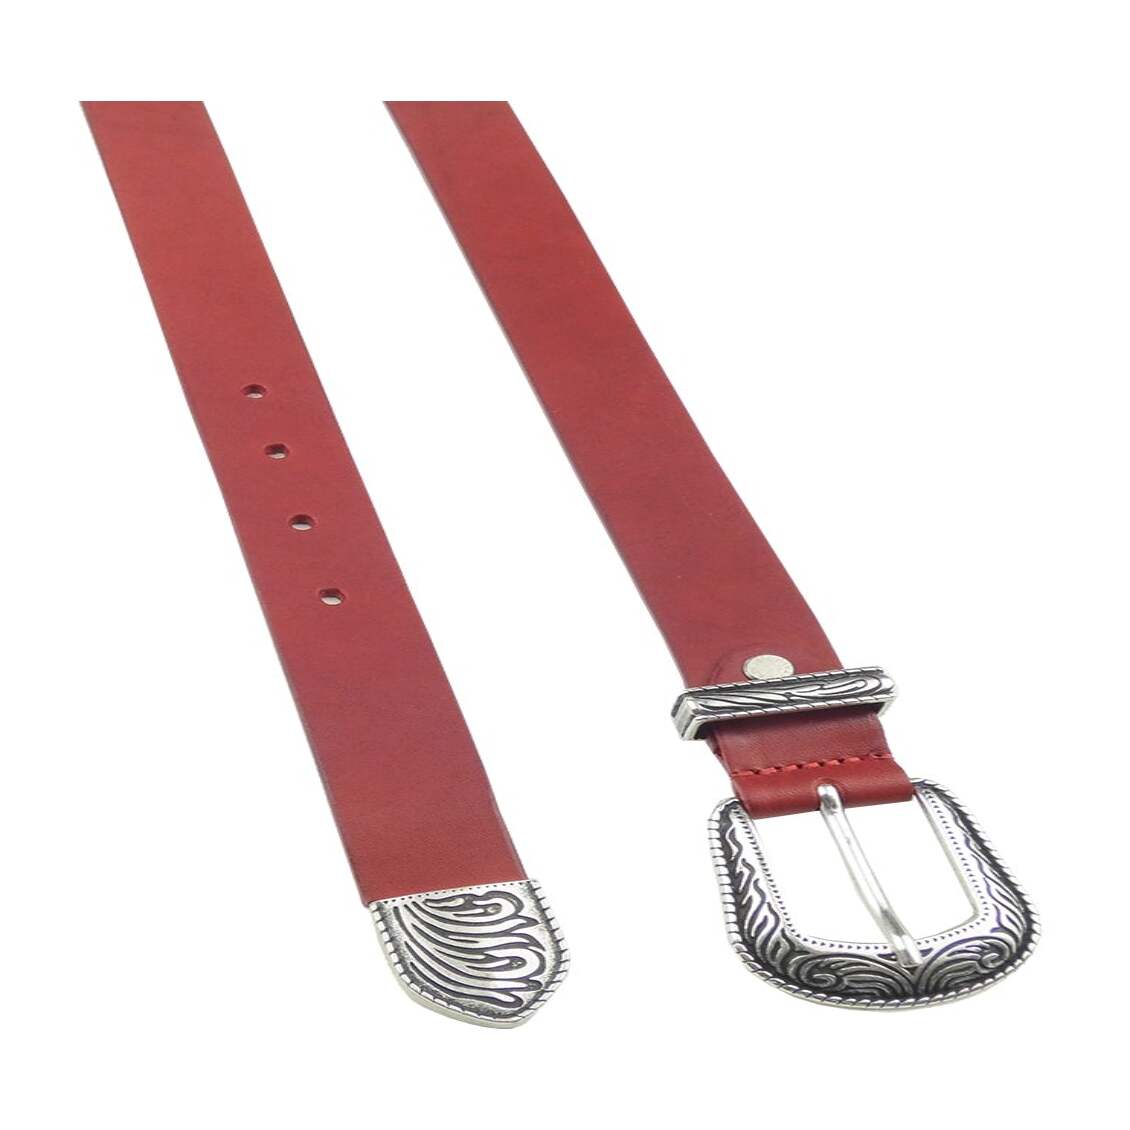 Cinturón de piel de 3cm con hebilla de zamak plata envejecida.